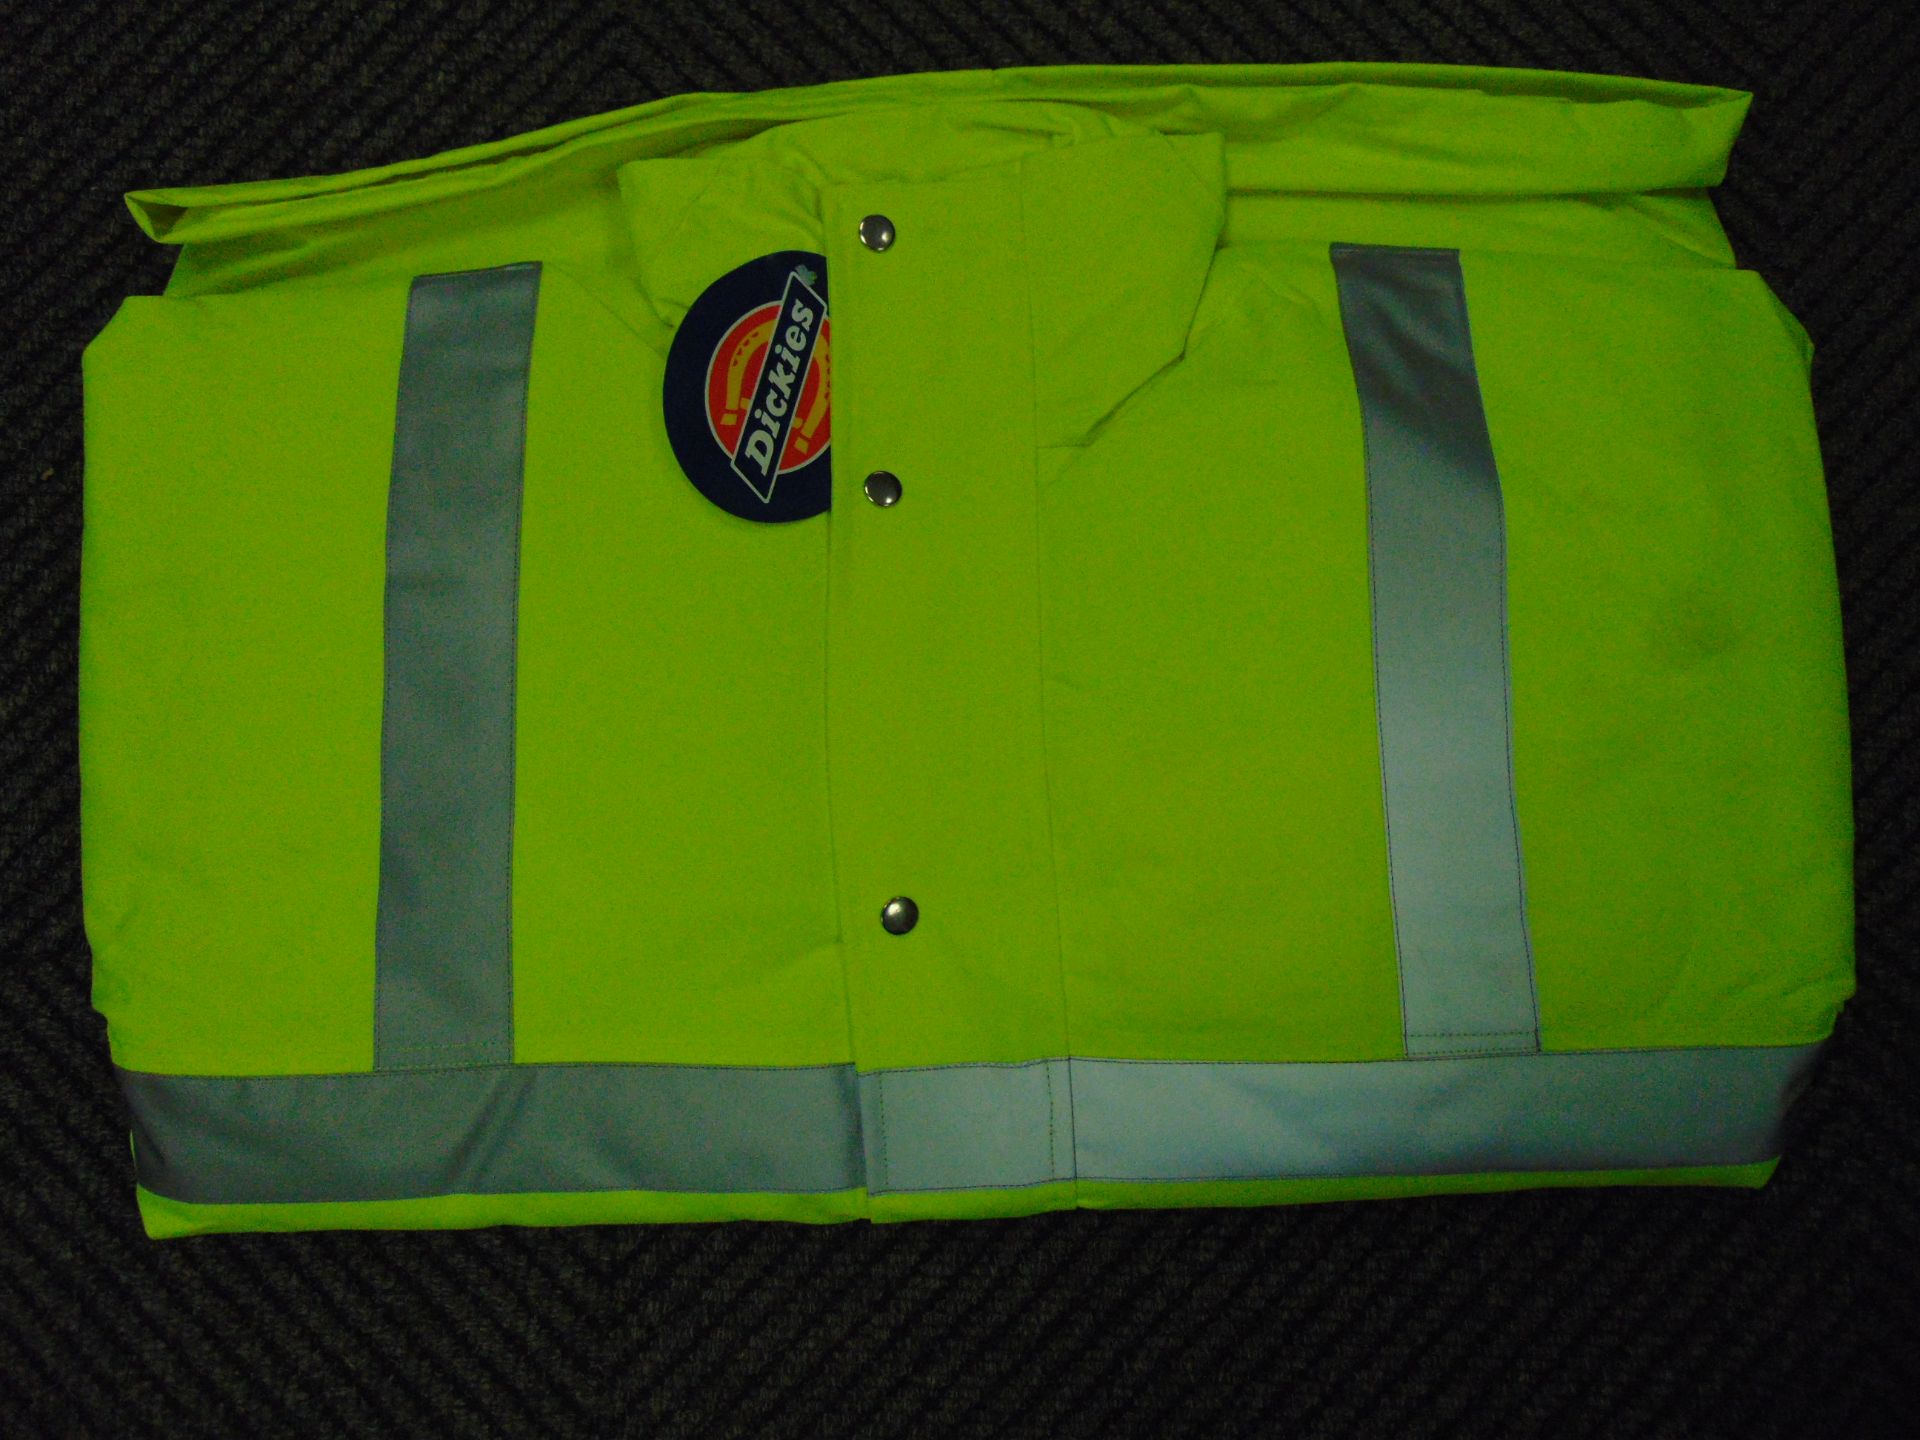 UNISSUED Hi Visibility Florescent Jacket. Size Large. - Image 2 of 6